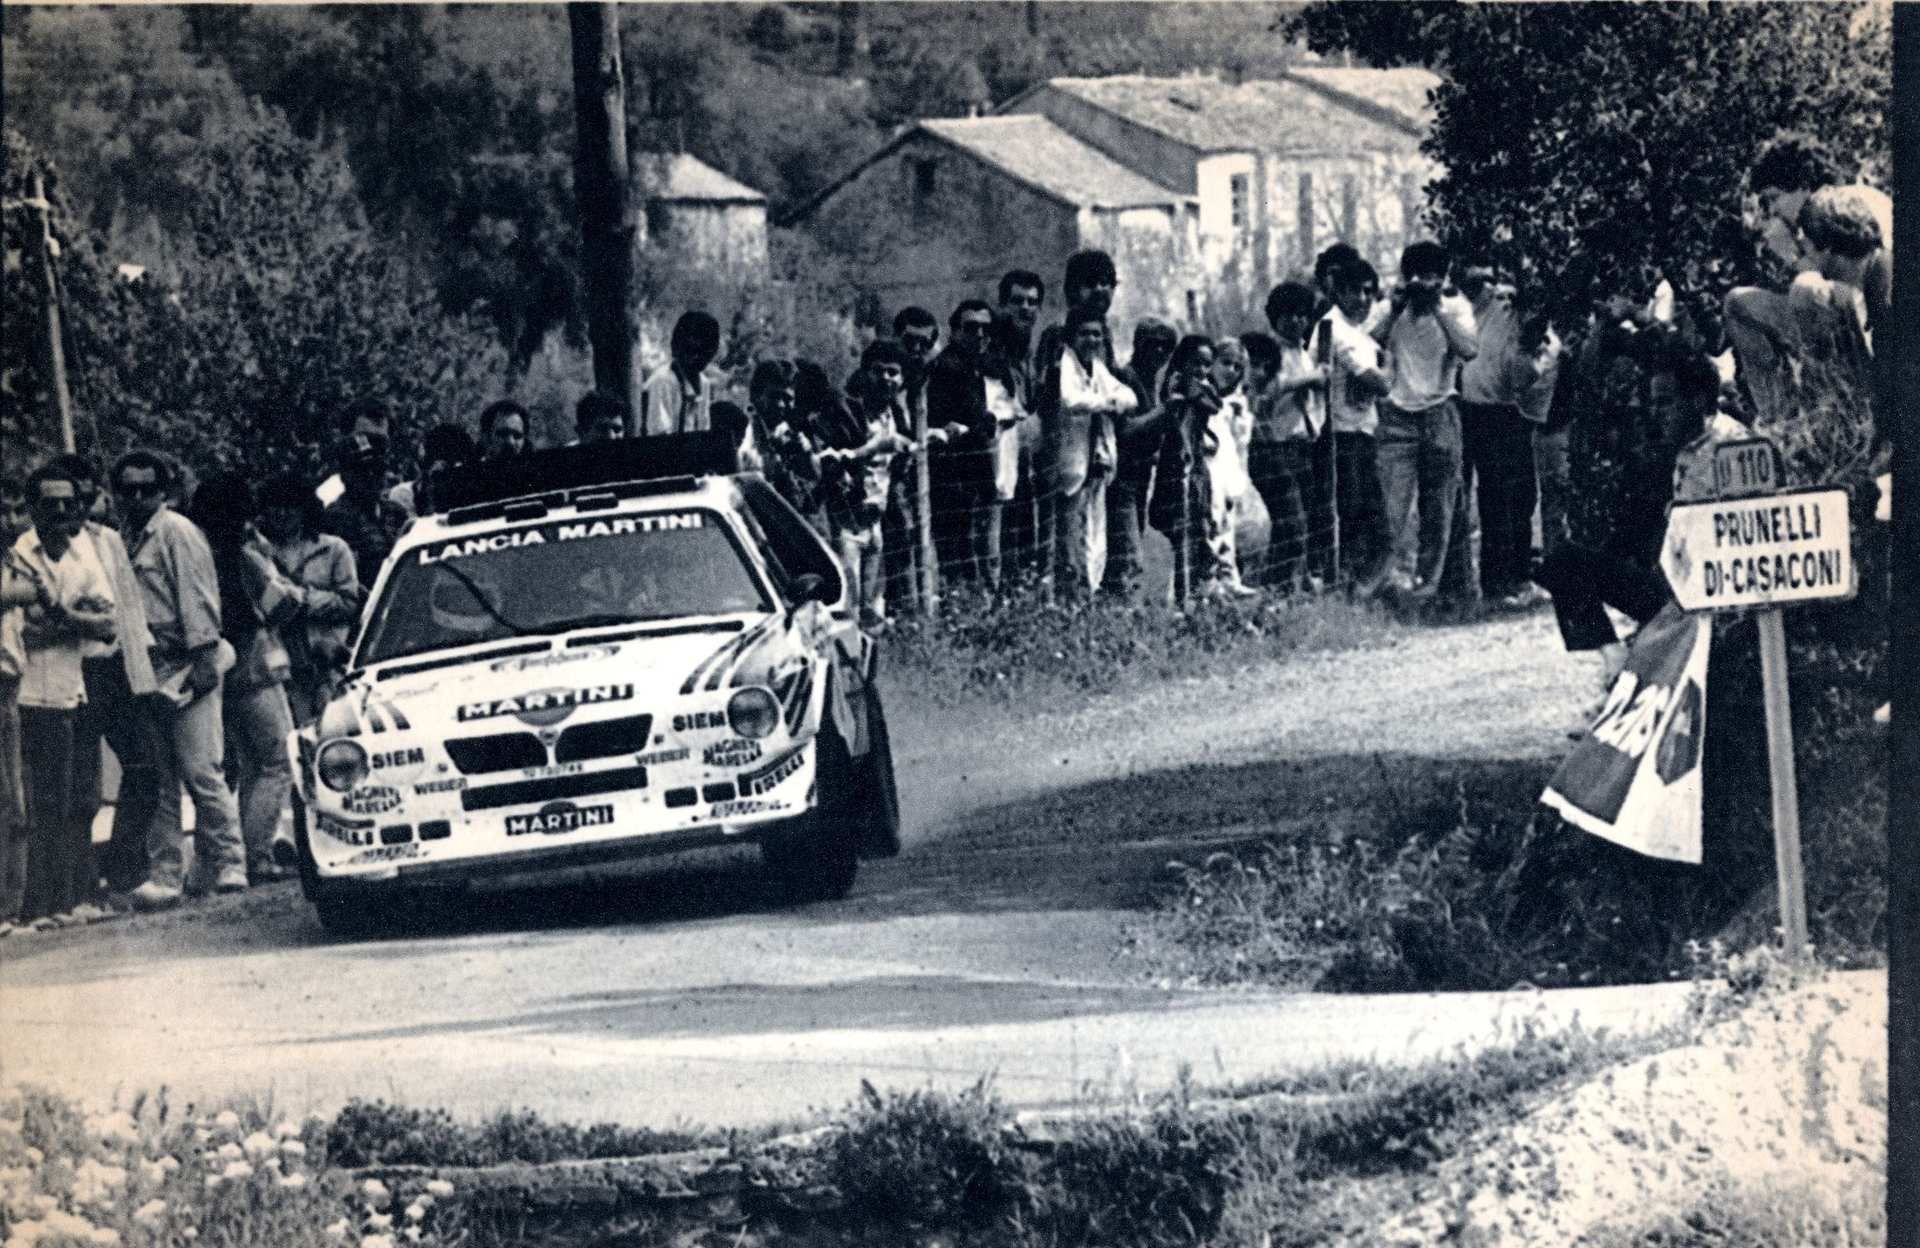 Henri Toivonen During The 1986 Tour de Corse